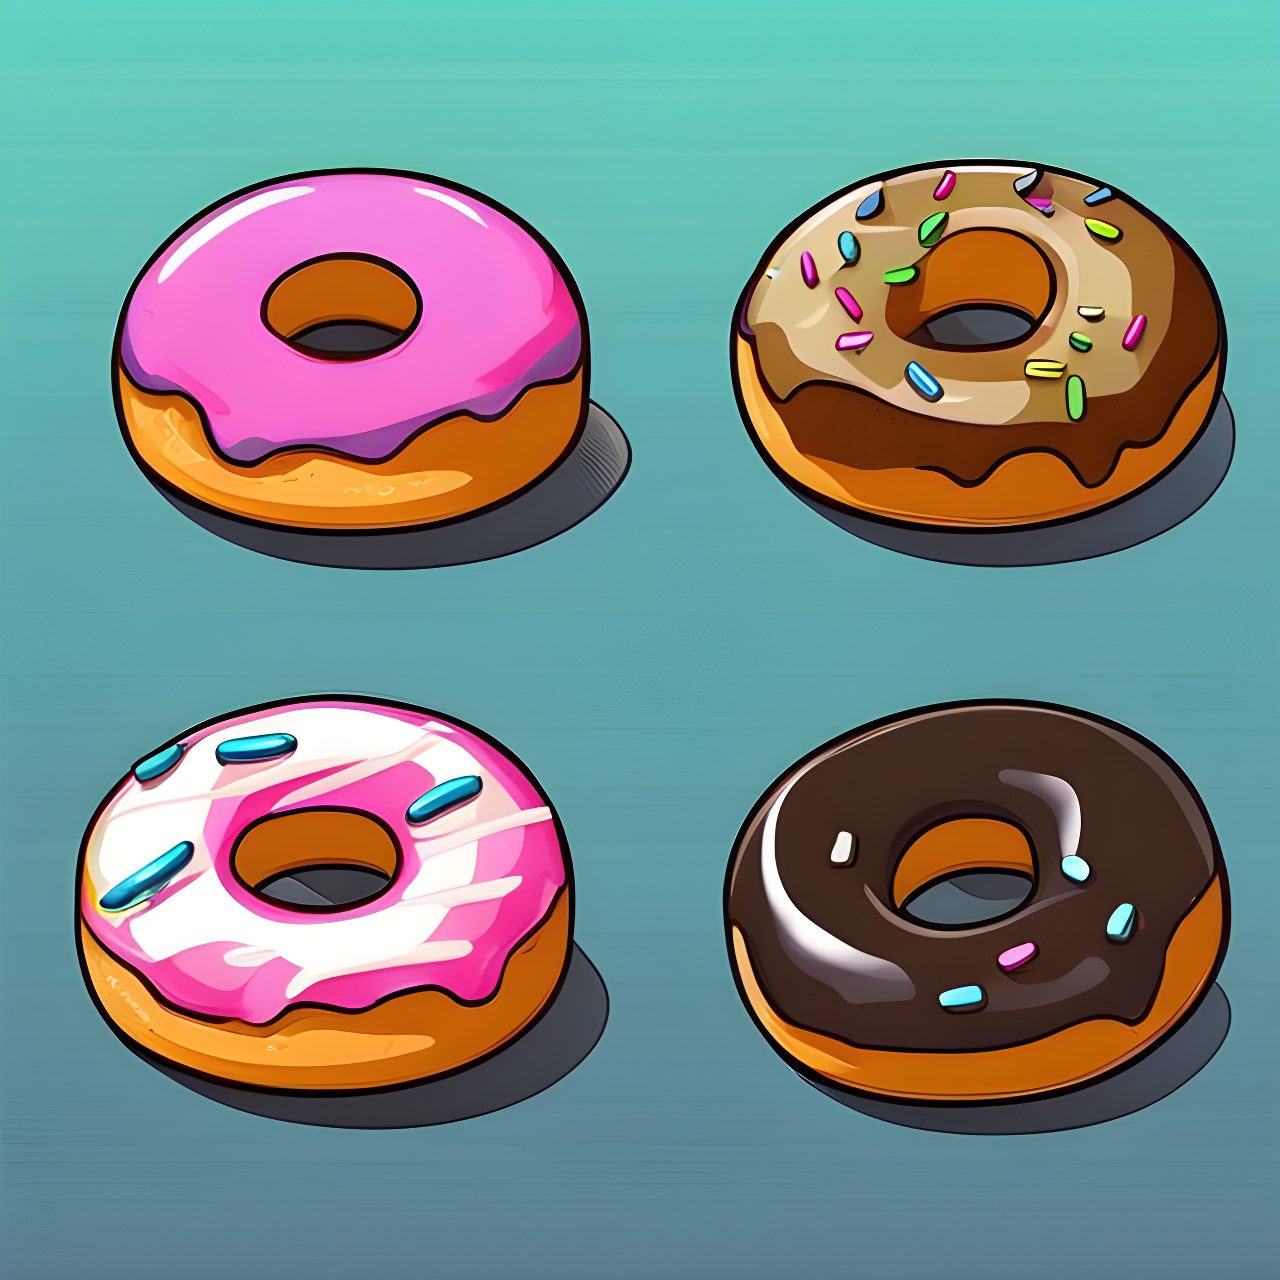 ντονατς ονειροκρίτης donuts artistic drawing, trending on artstation